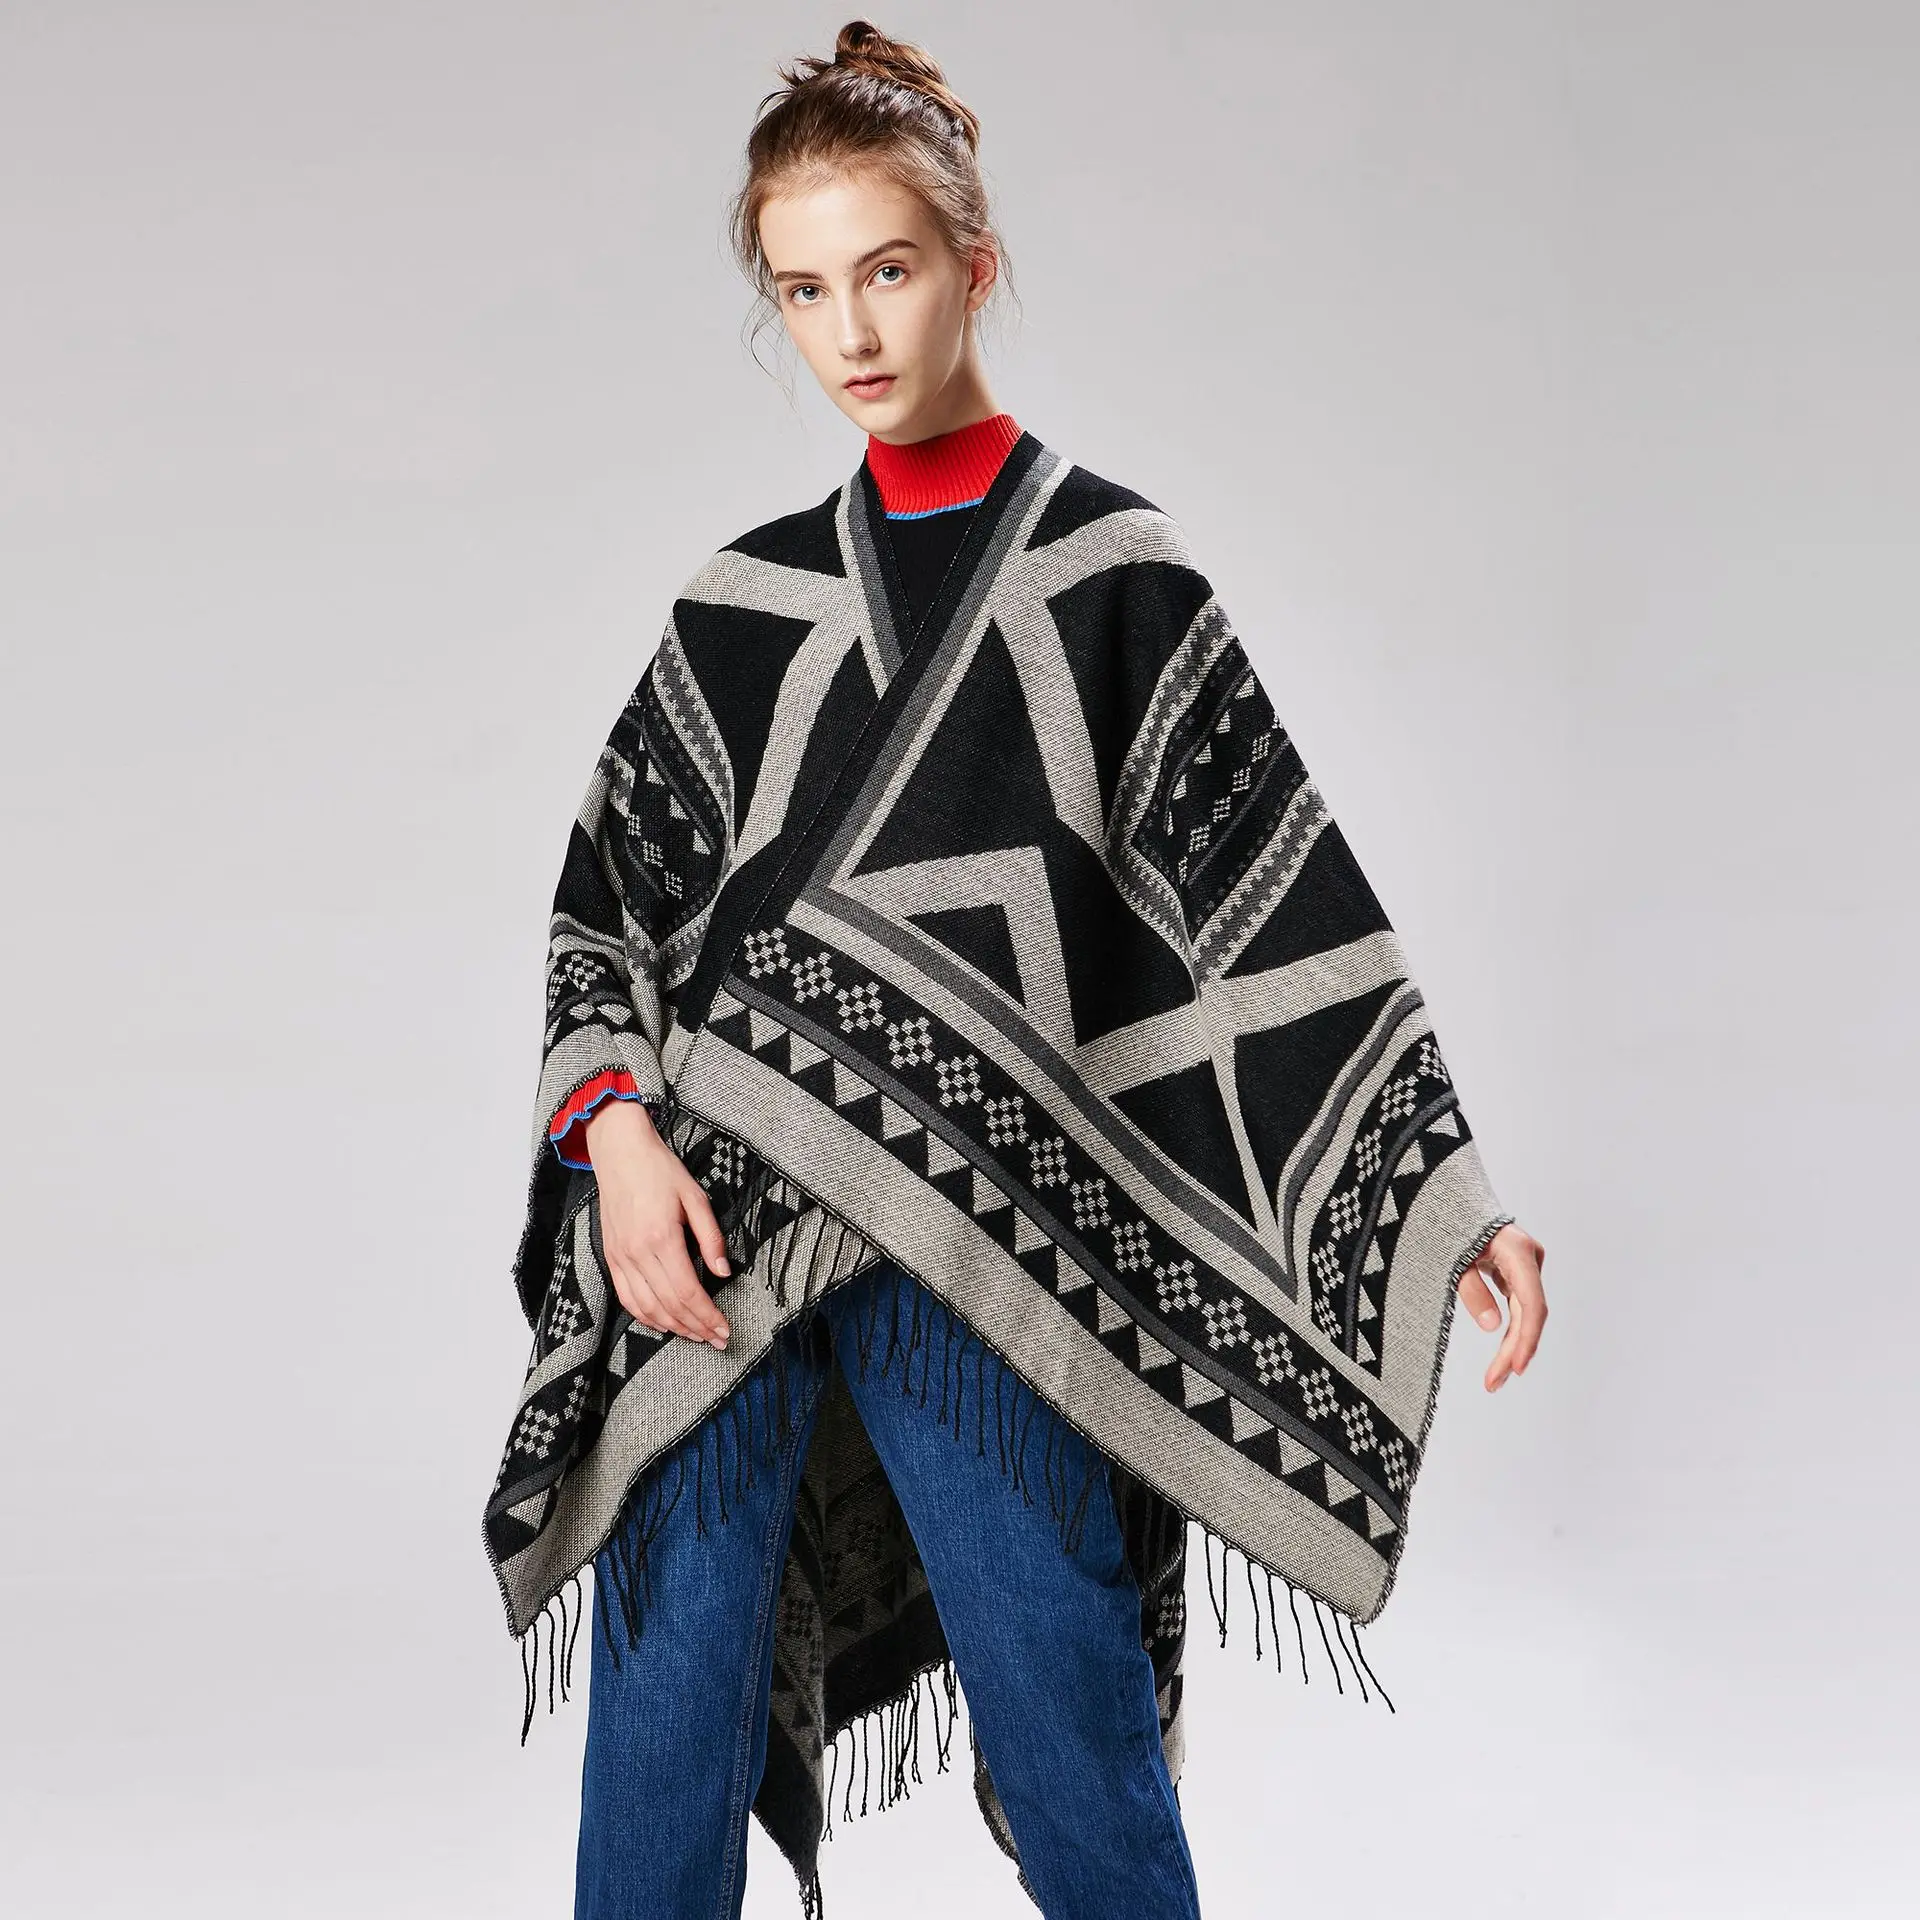 2019 женская верхняя одежда зима шарфы для женщин осень кашемировый пончо одеяло дамы вязаная шаль накидка Кашемировый Шарф пончо леди